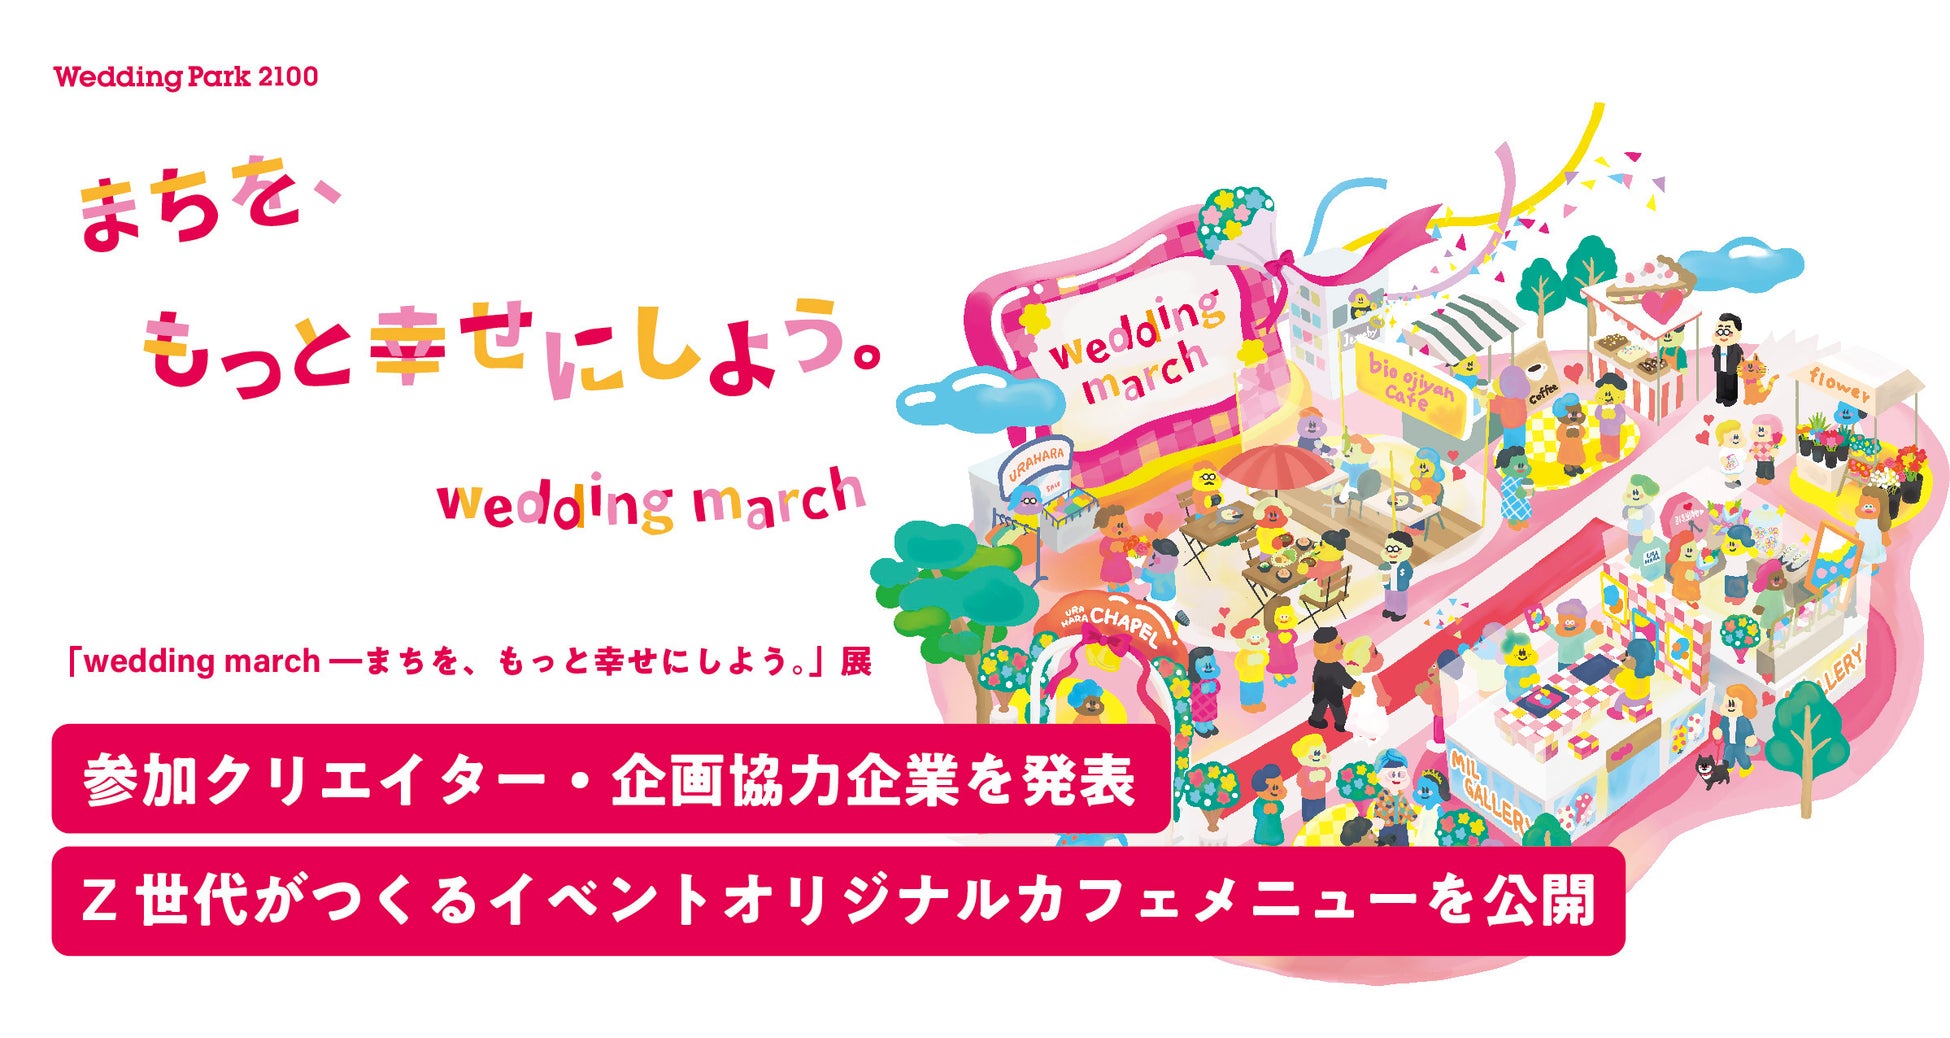 「wedding march ―まちを、もっと幸せにしよう。」展参加クリエイター・企画協力企業を発表　Z世代考案の結婚式の魅力が伝わるカフェメニューも初公開